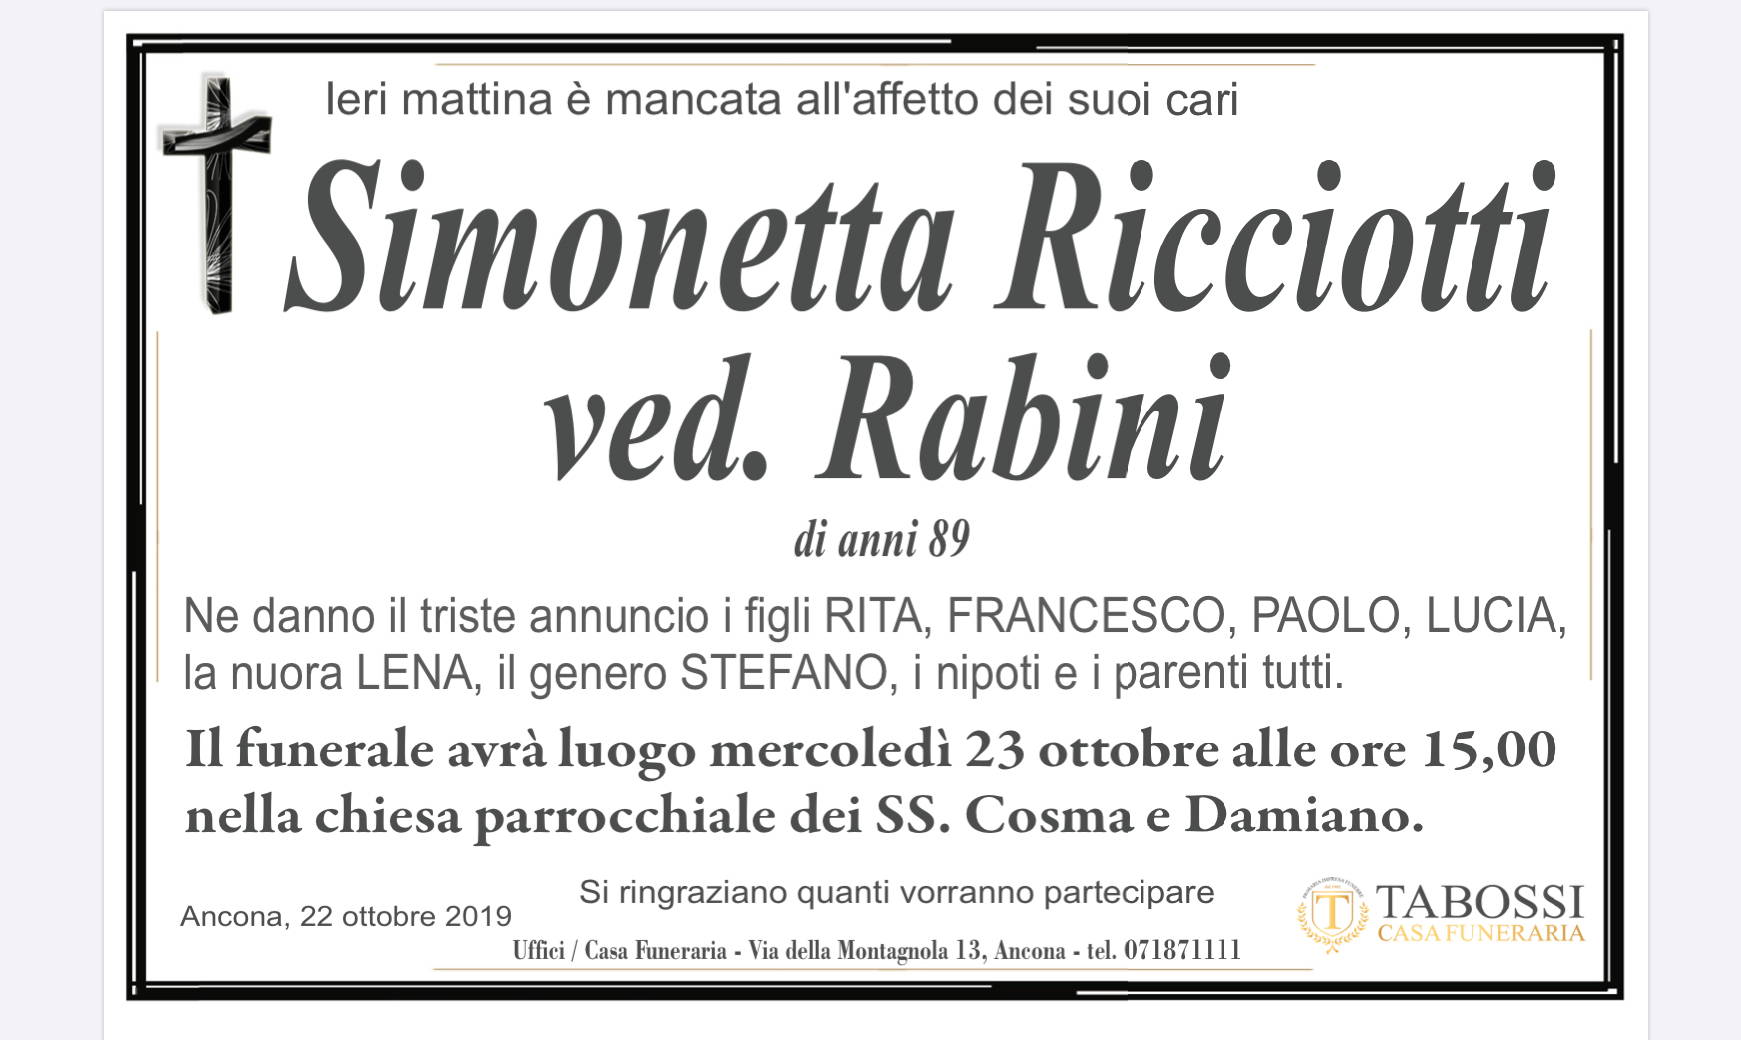 Simonetta Ricciotti